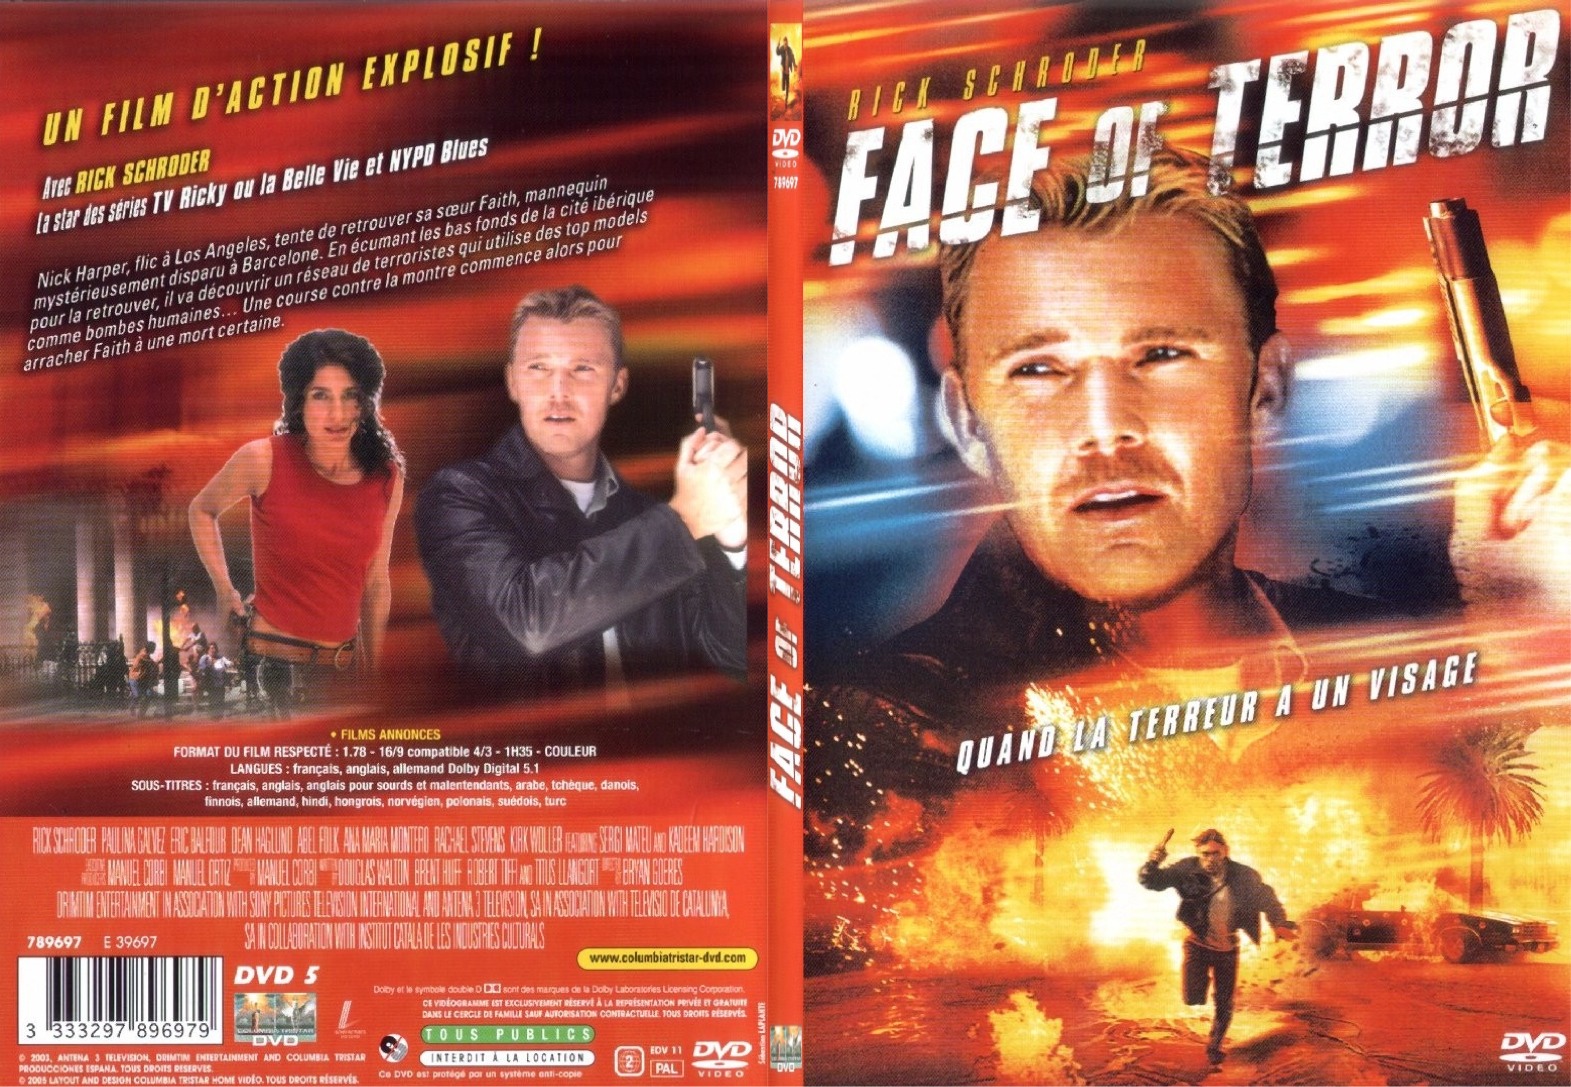 Jaquette DVD Face of terror - SLIM